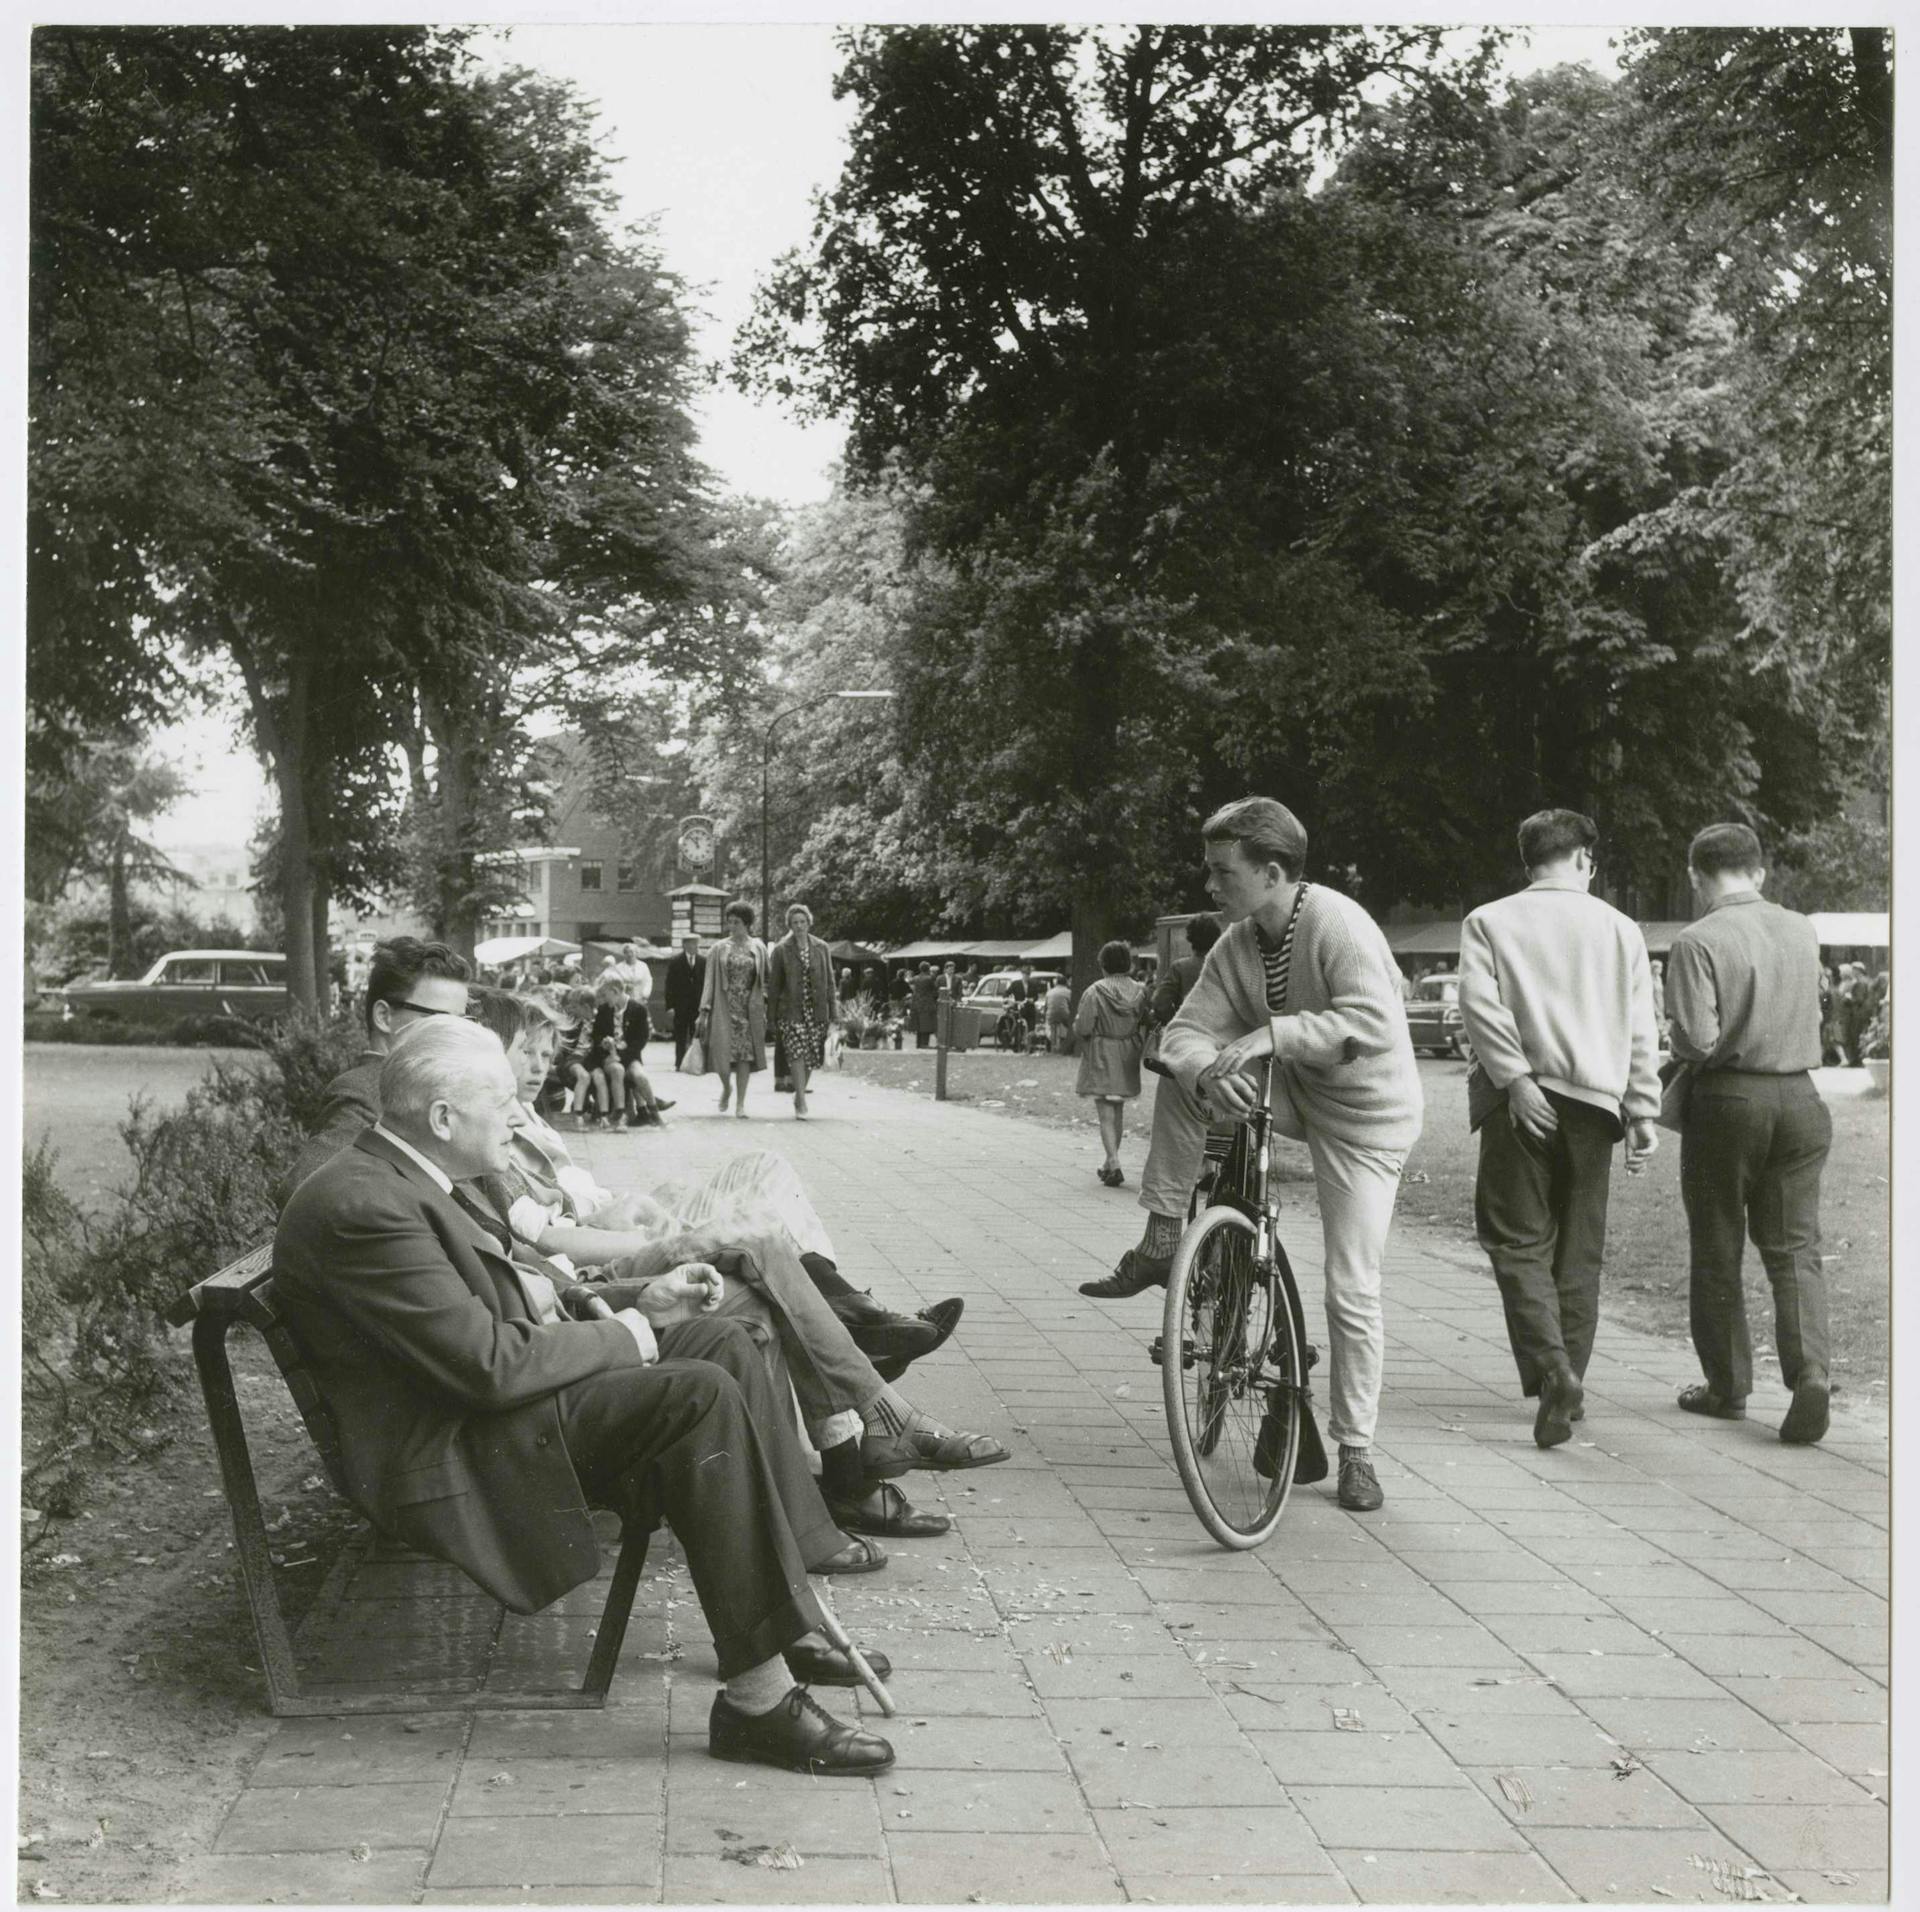  Ouderen in de wijk, ca. 1965. Opdrachtgever: Stichting Goed Wonen. Foto Wouter van Heusden. Collectie Het Nieuwe Instituut, SGWO f3-3